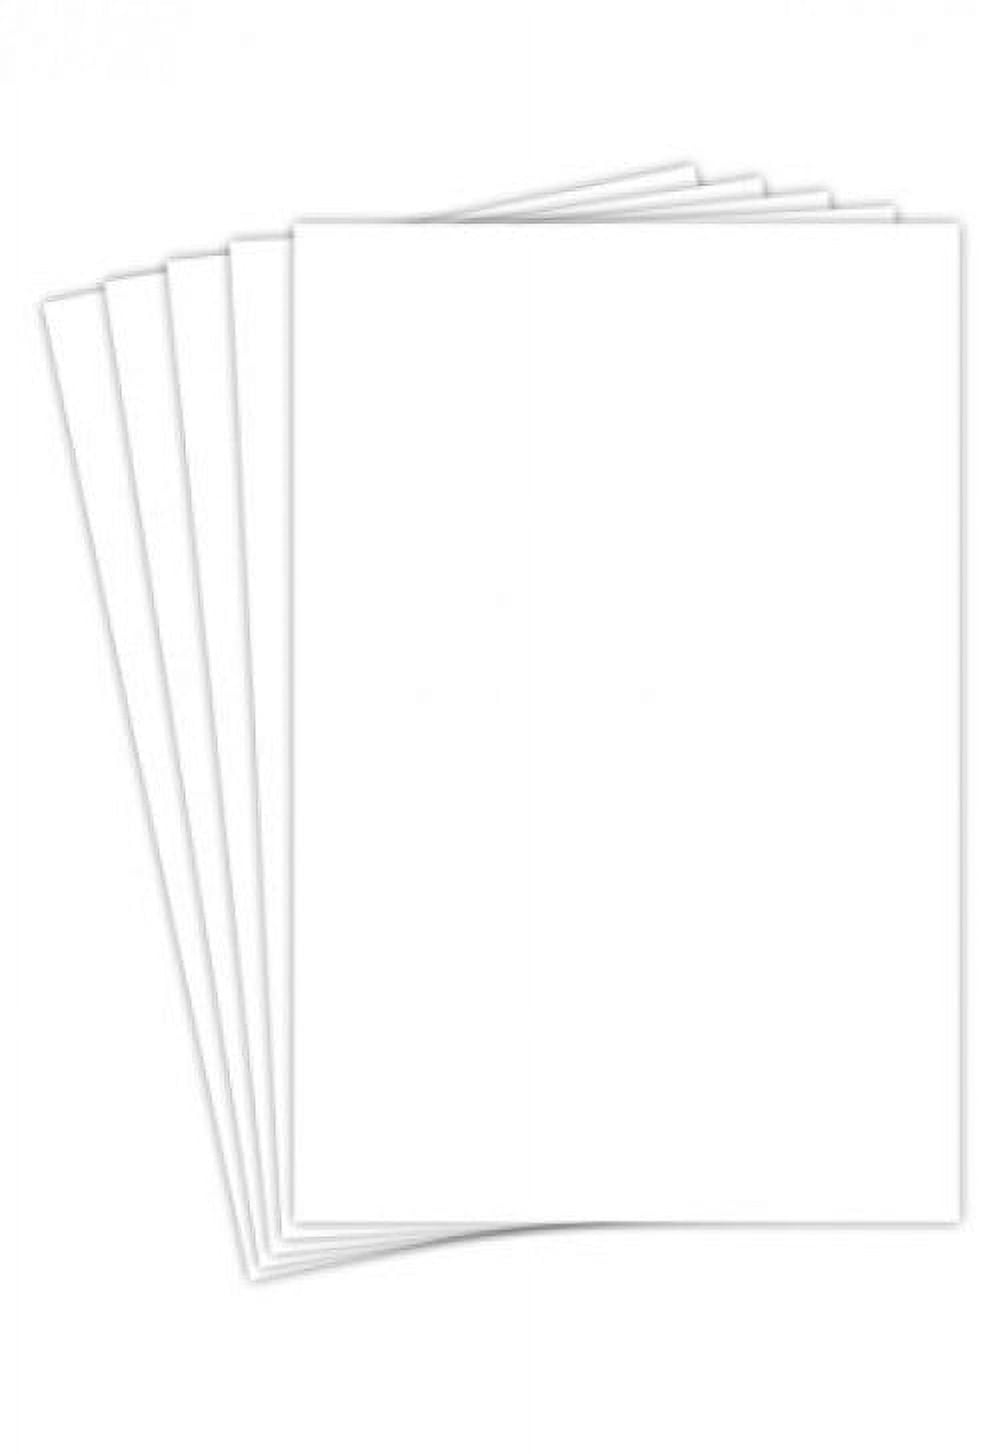 Bright White Card Stock 100-lb Cover Paper